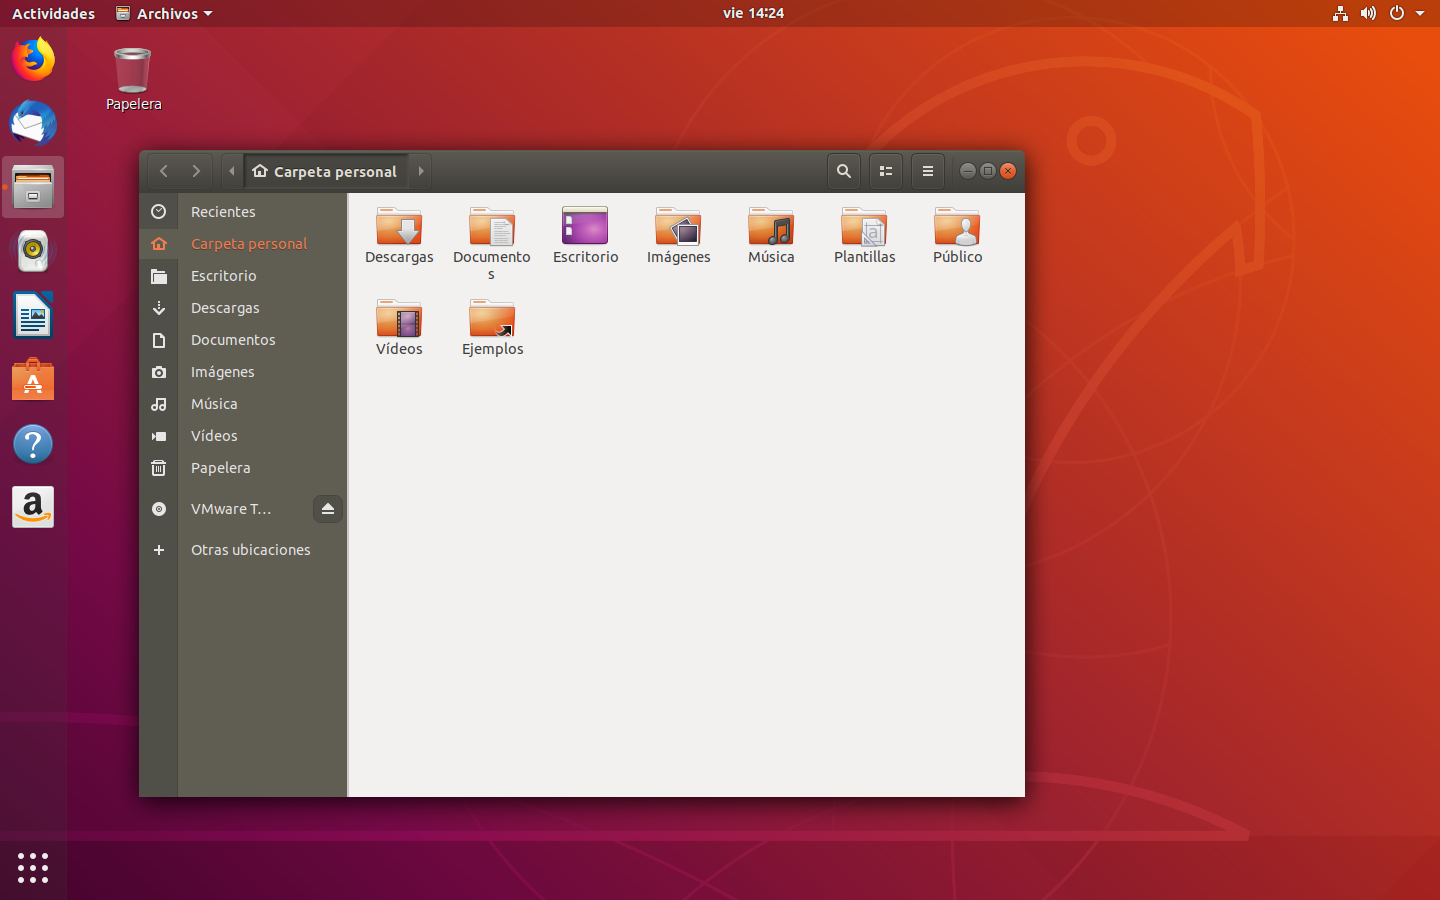 Ubuntu Linux 18.04 LTS